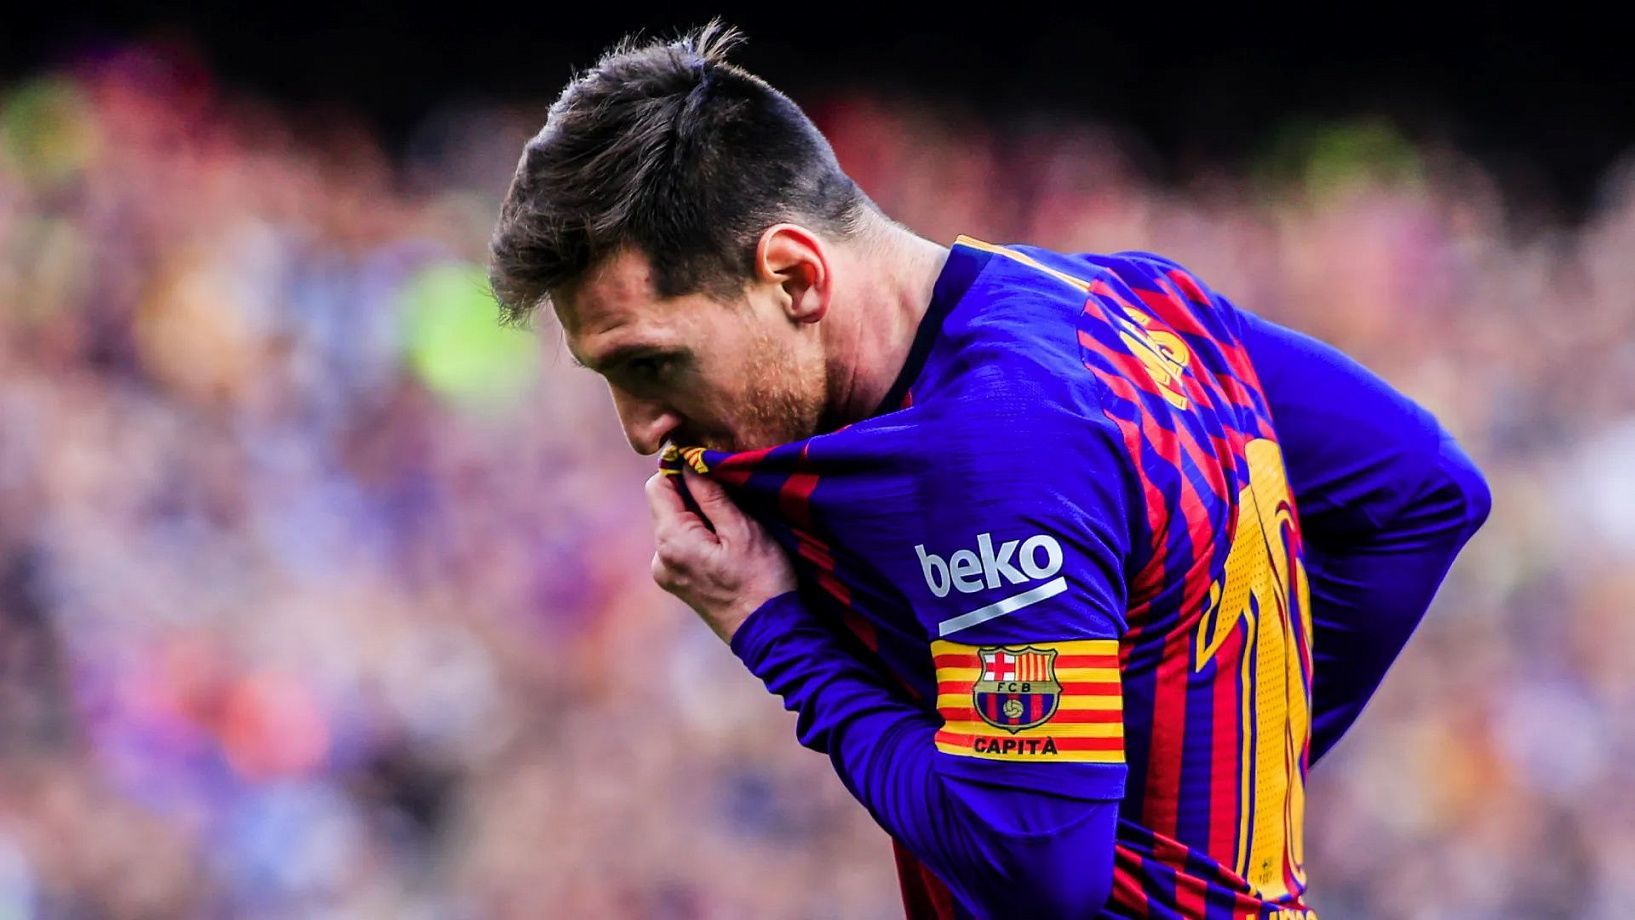 El FC Barcelona está buscando patrocinadores de alto perfil para poder financiar el regreso de Messi